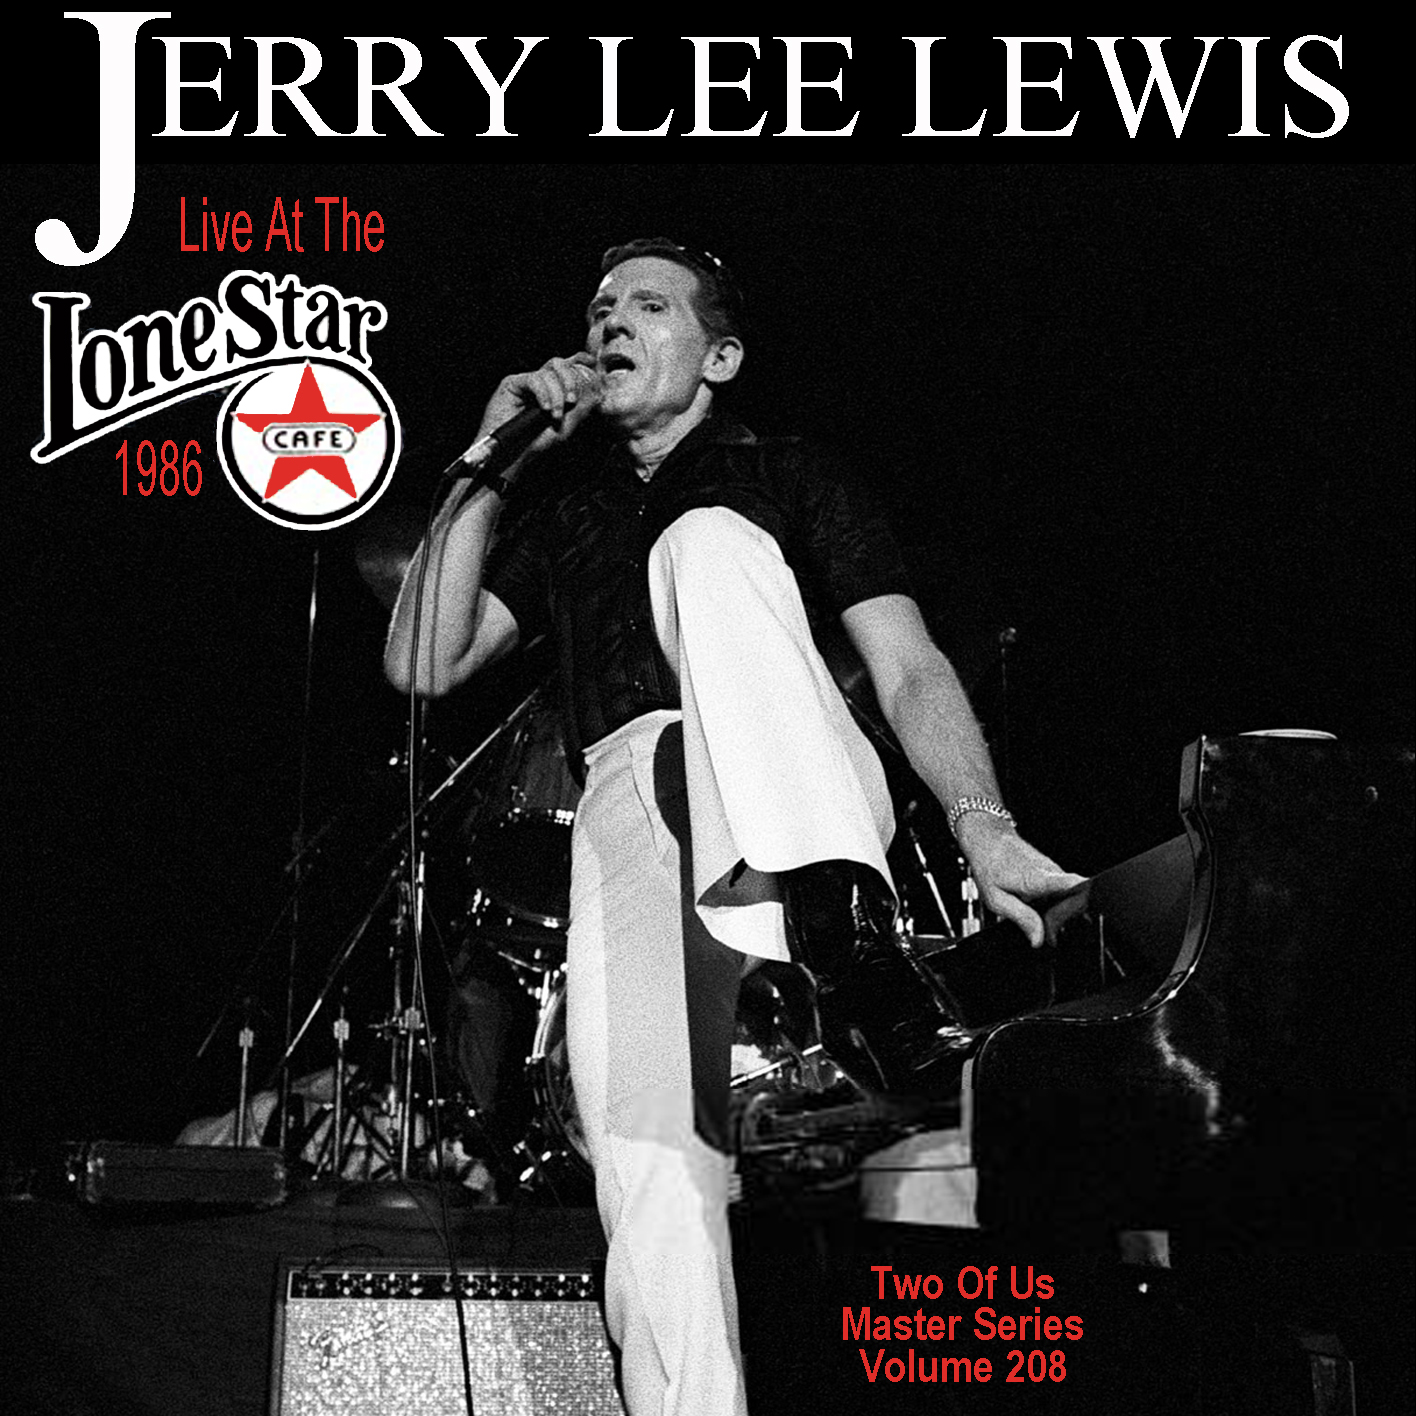 JerryLeeLewis1986-04-28LoneStarCafeNYC (1).jpg